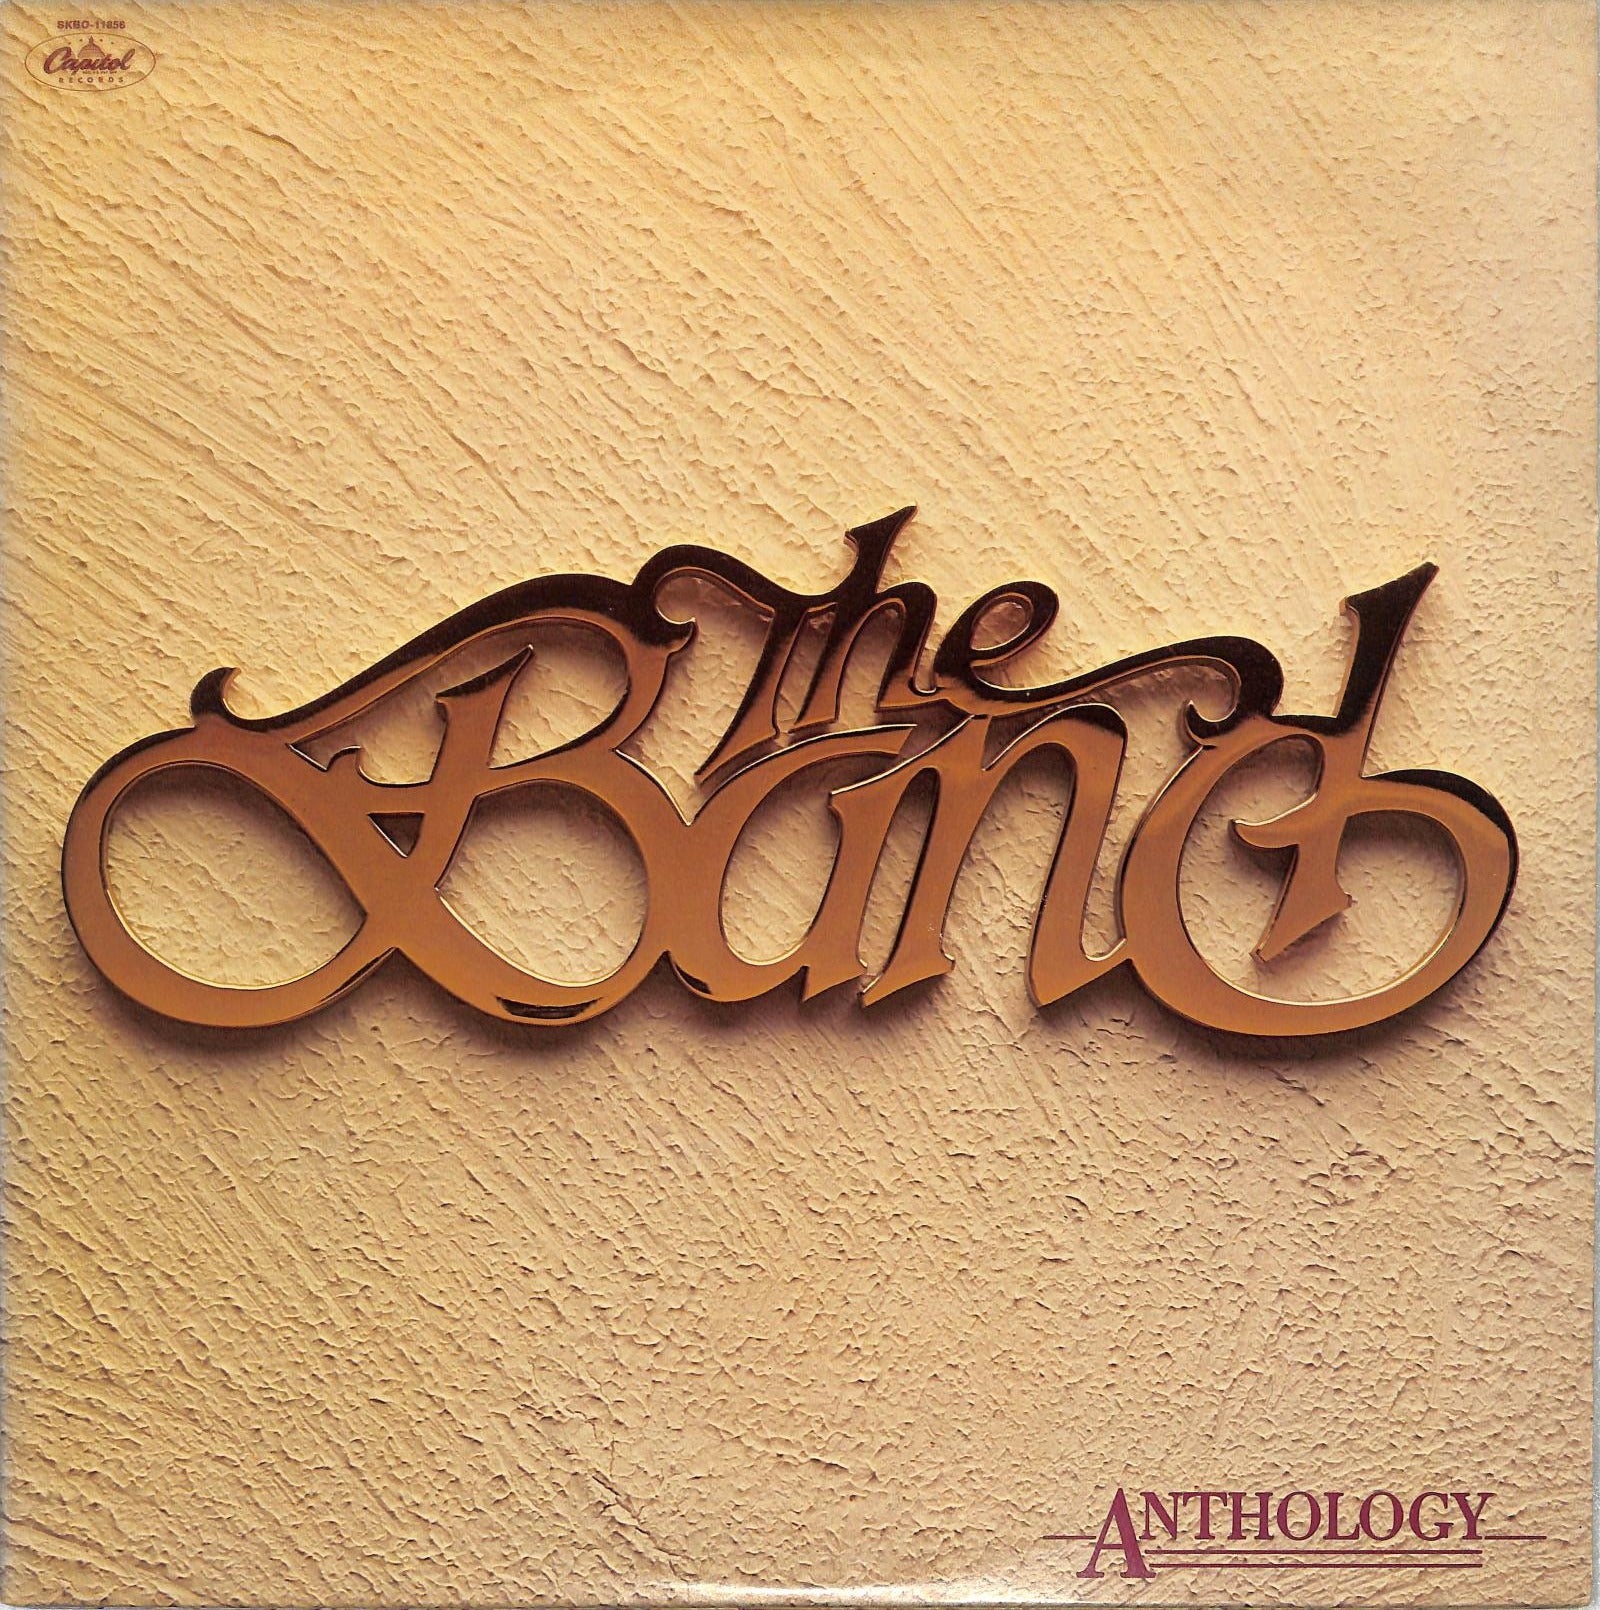 THE BAND - Anthology